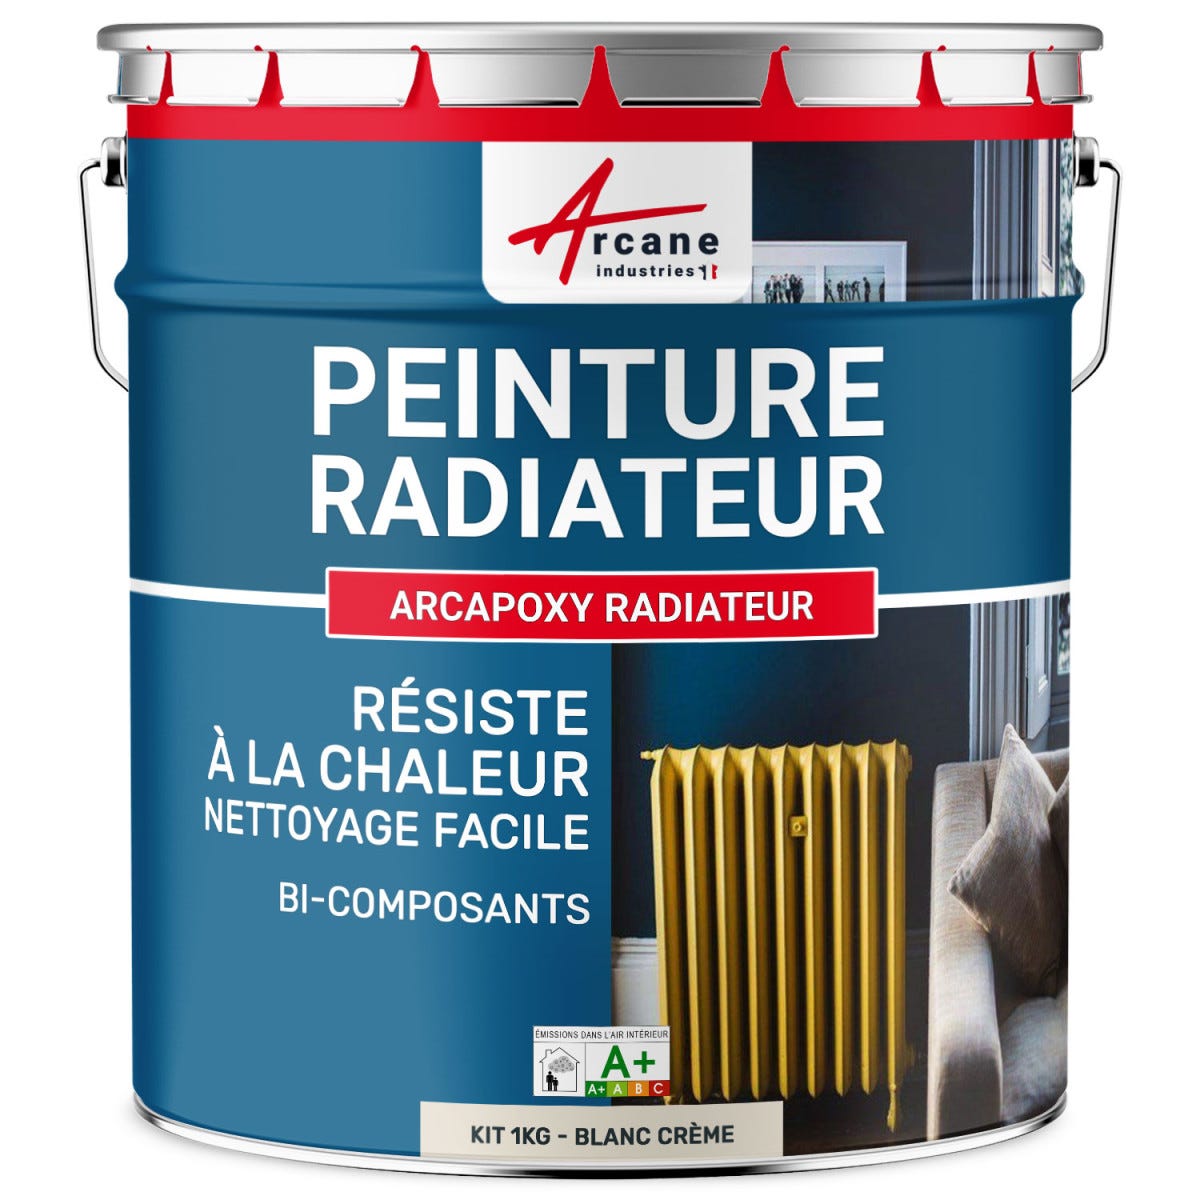 Peinture Radiateur fonte acier alu - PEINTURE RADIATEUR - 1 kg (jusqu'à 5 m² en 2 couches) - Blanc Cassé - Crème - RAL 9001 - ARCANE INDUSTRIES 8